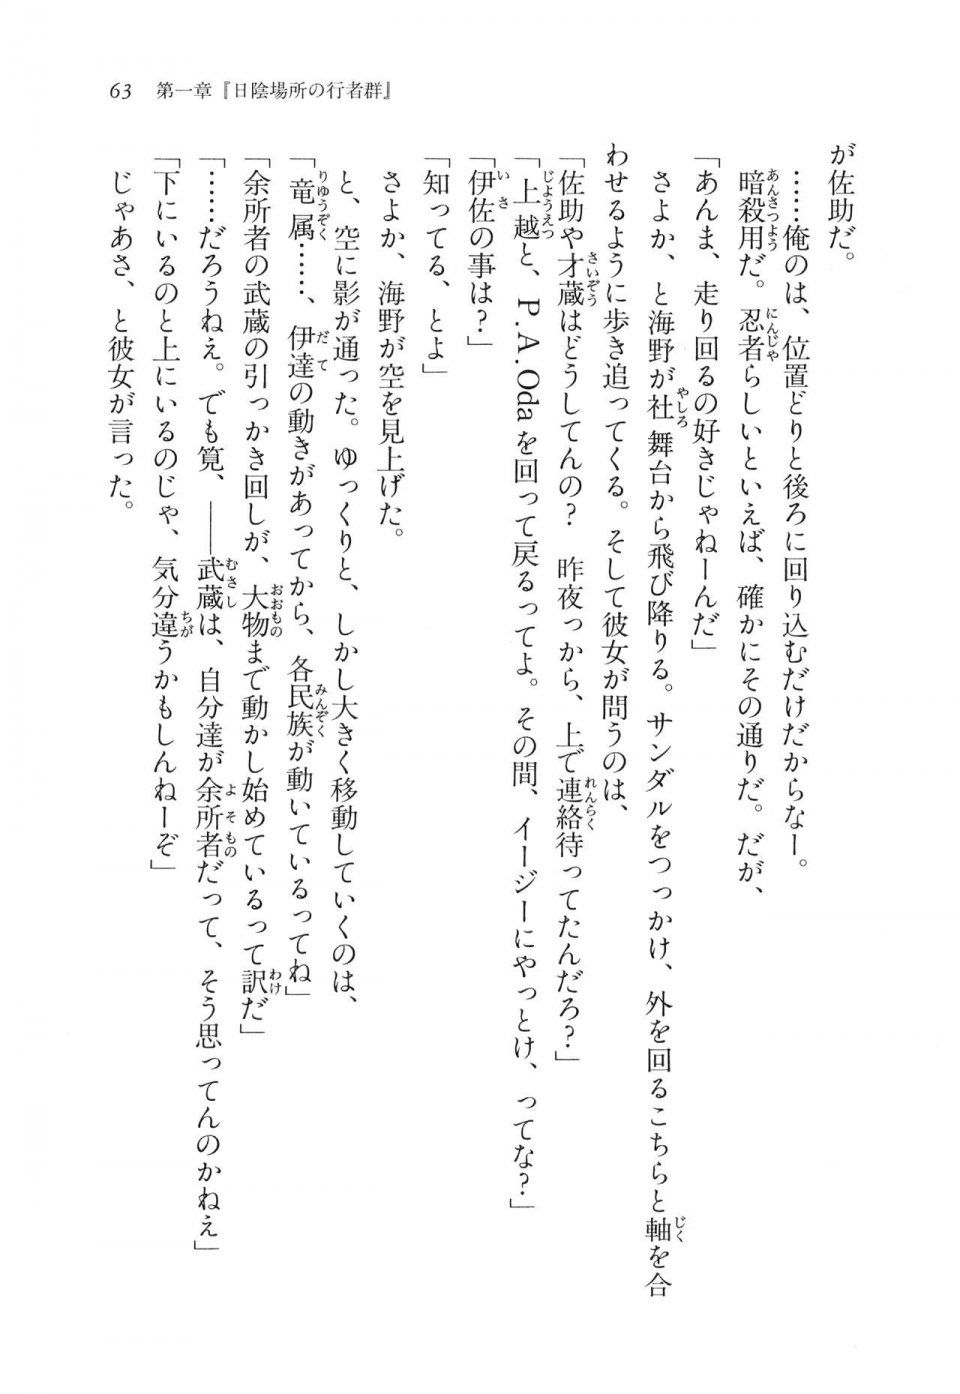 Kyoukai Senjou no Horizon LN Vol 11(5A) - Photo #63